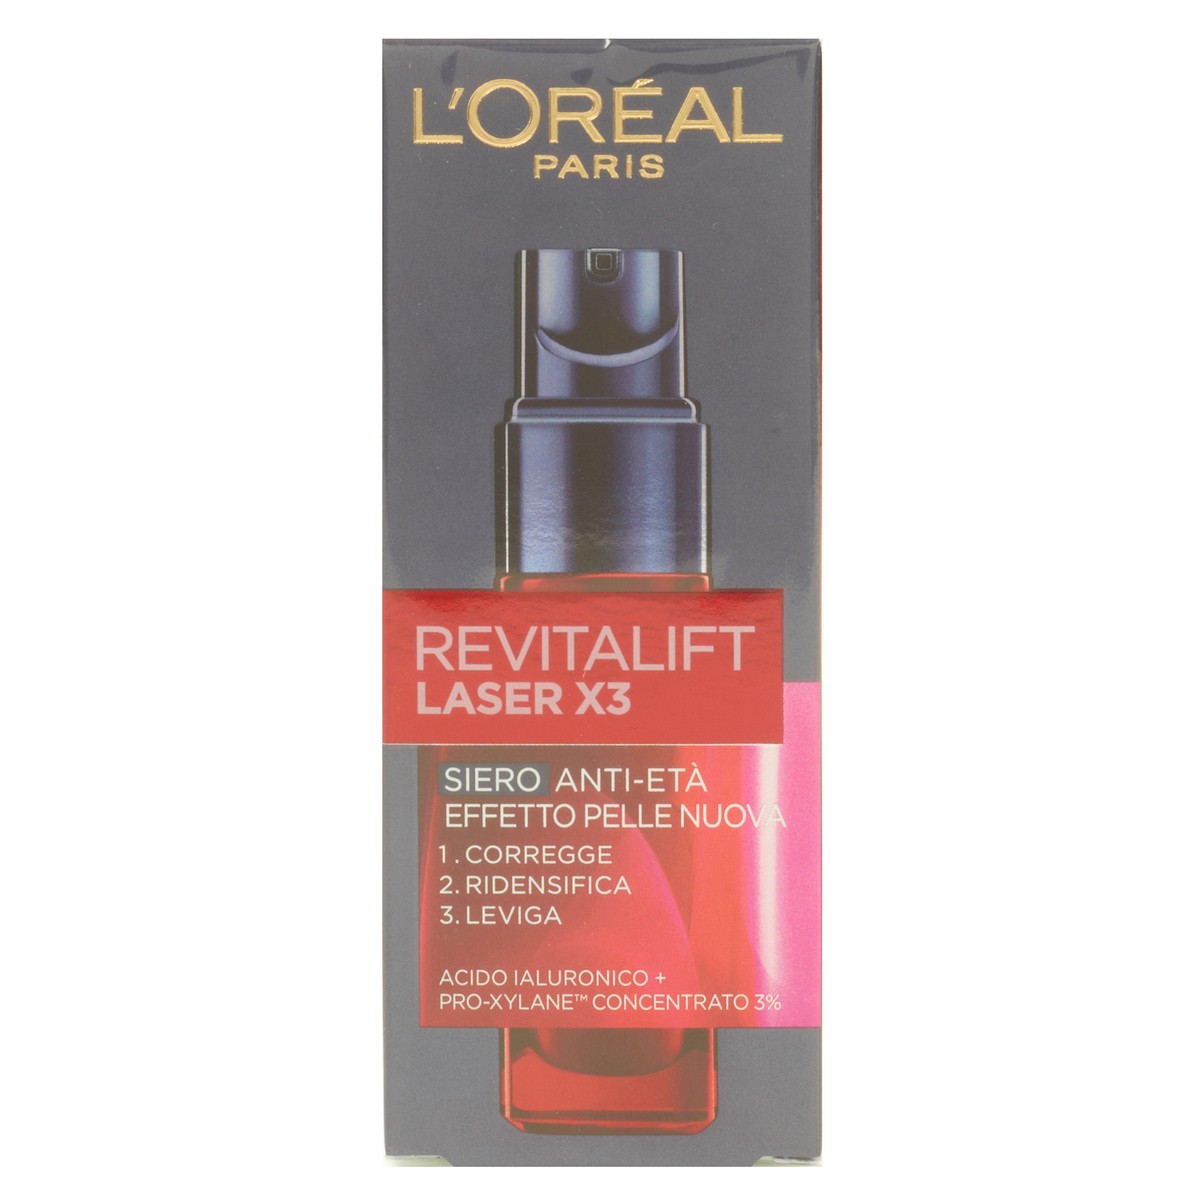 L'Oréal Paris Siero Antietà Revitalift Laser x3